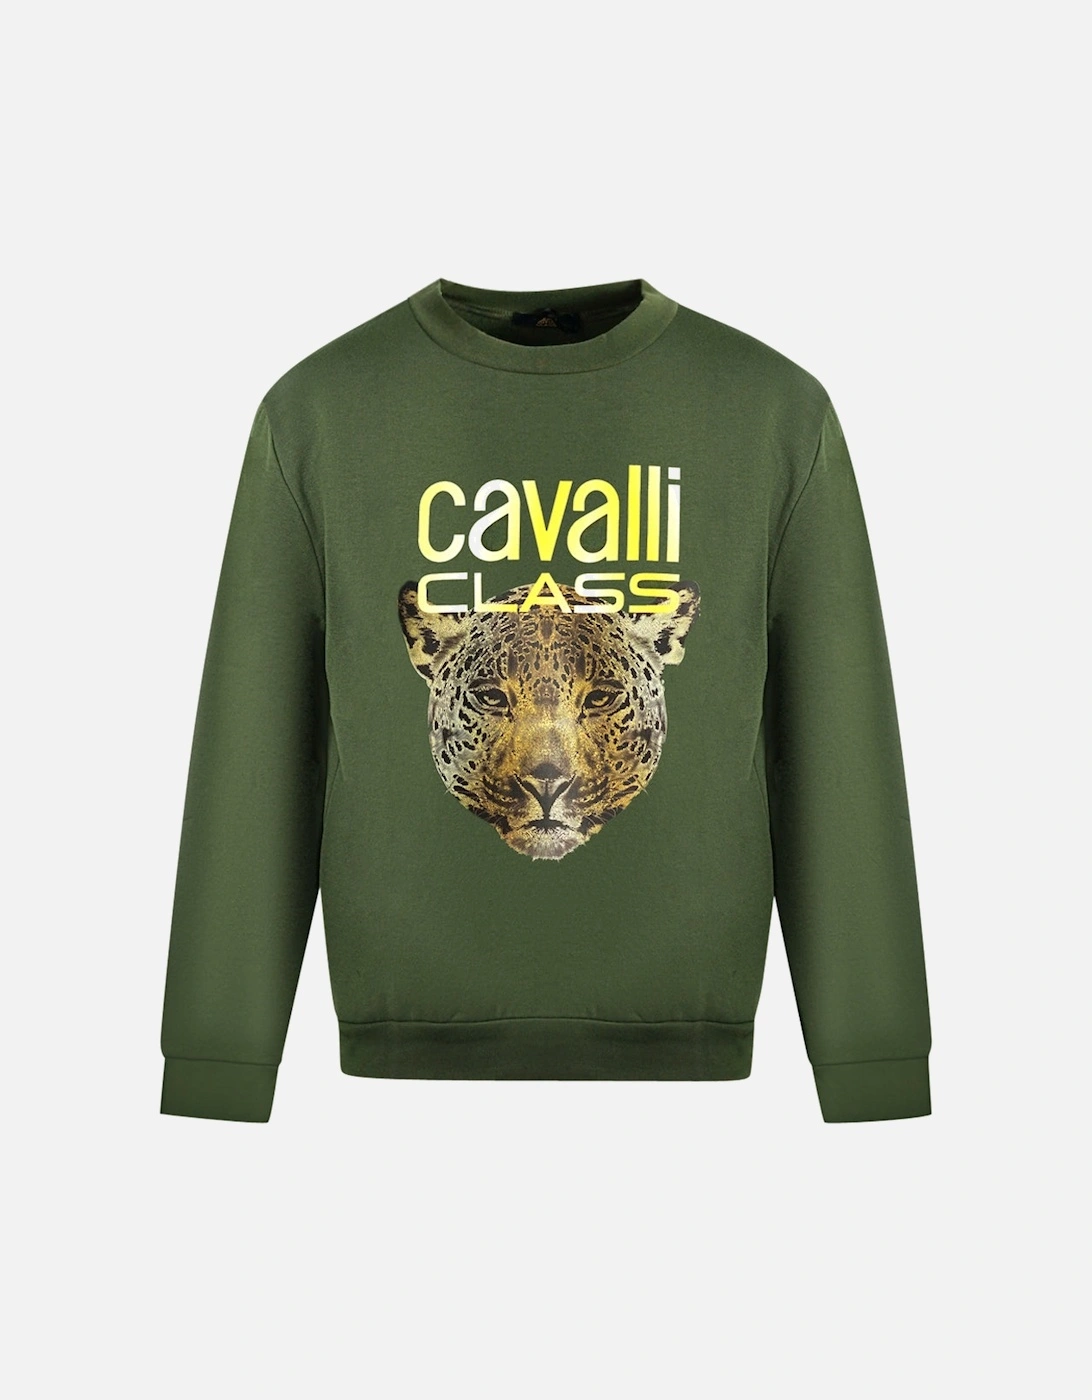 Cavalli Class Leopard Print Logo Olive Jumper, 3 of 2